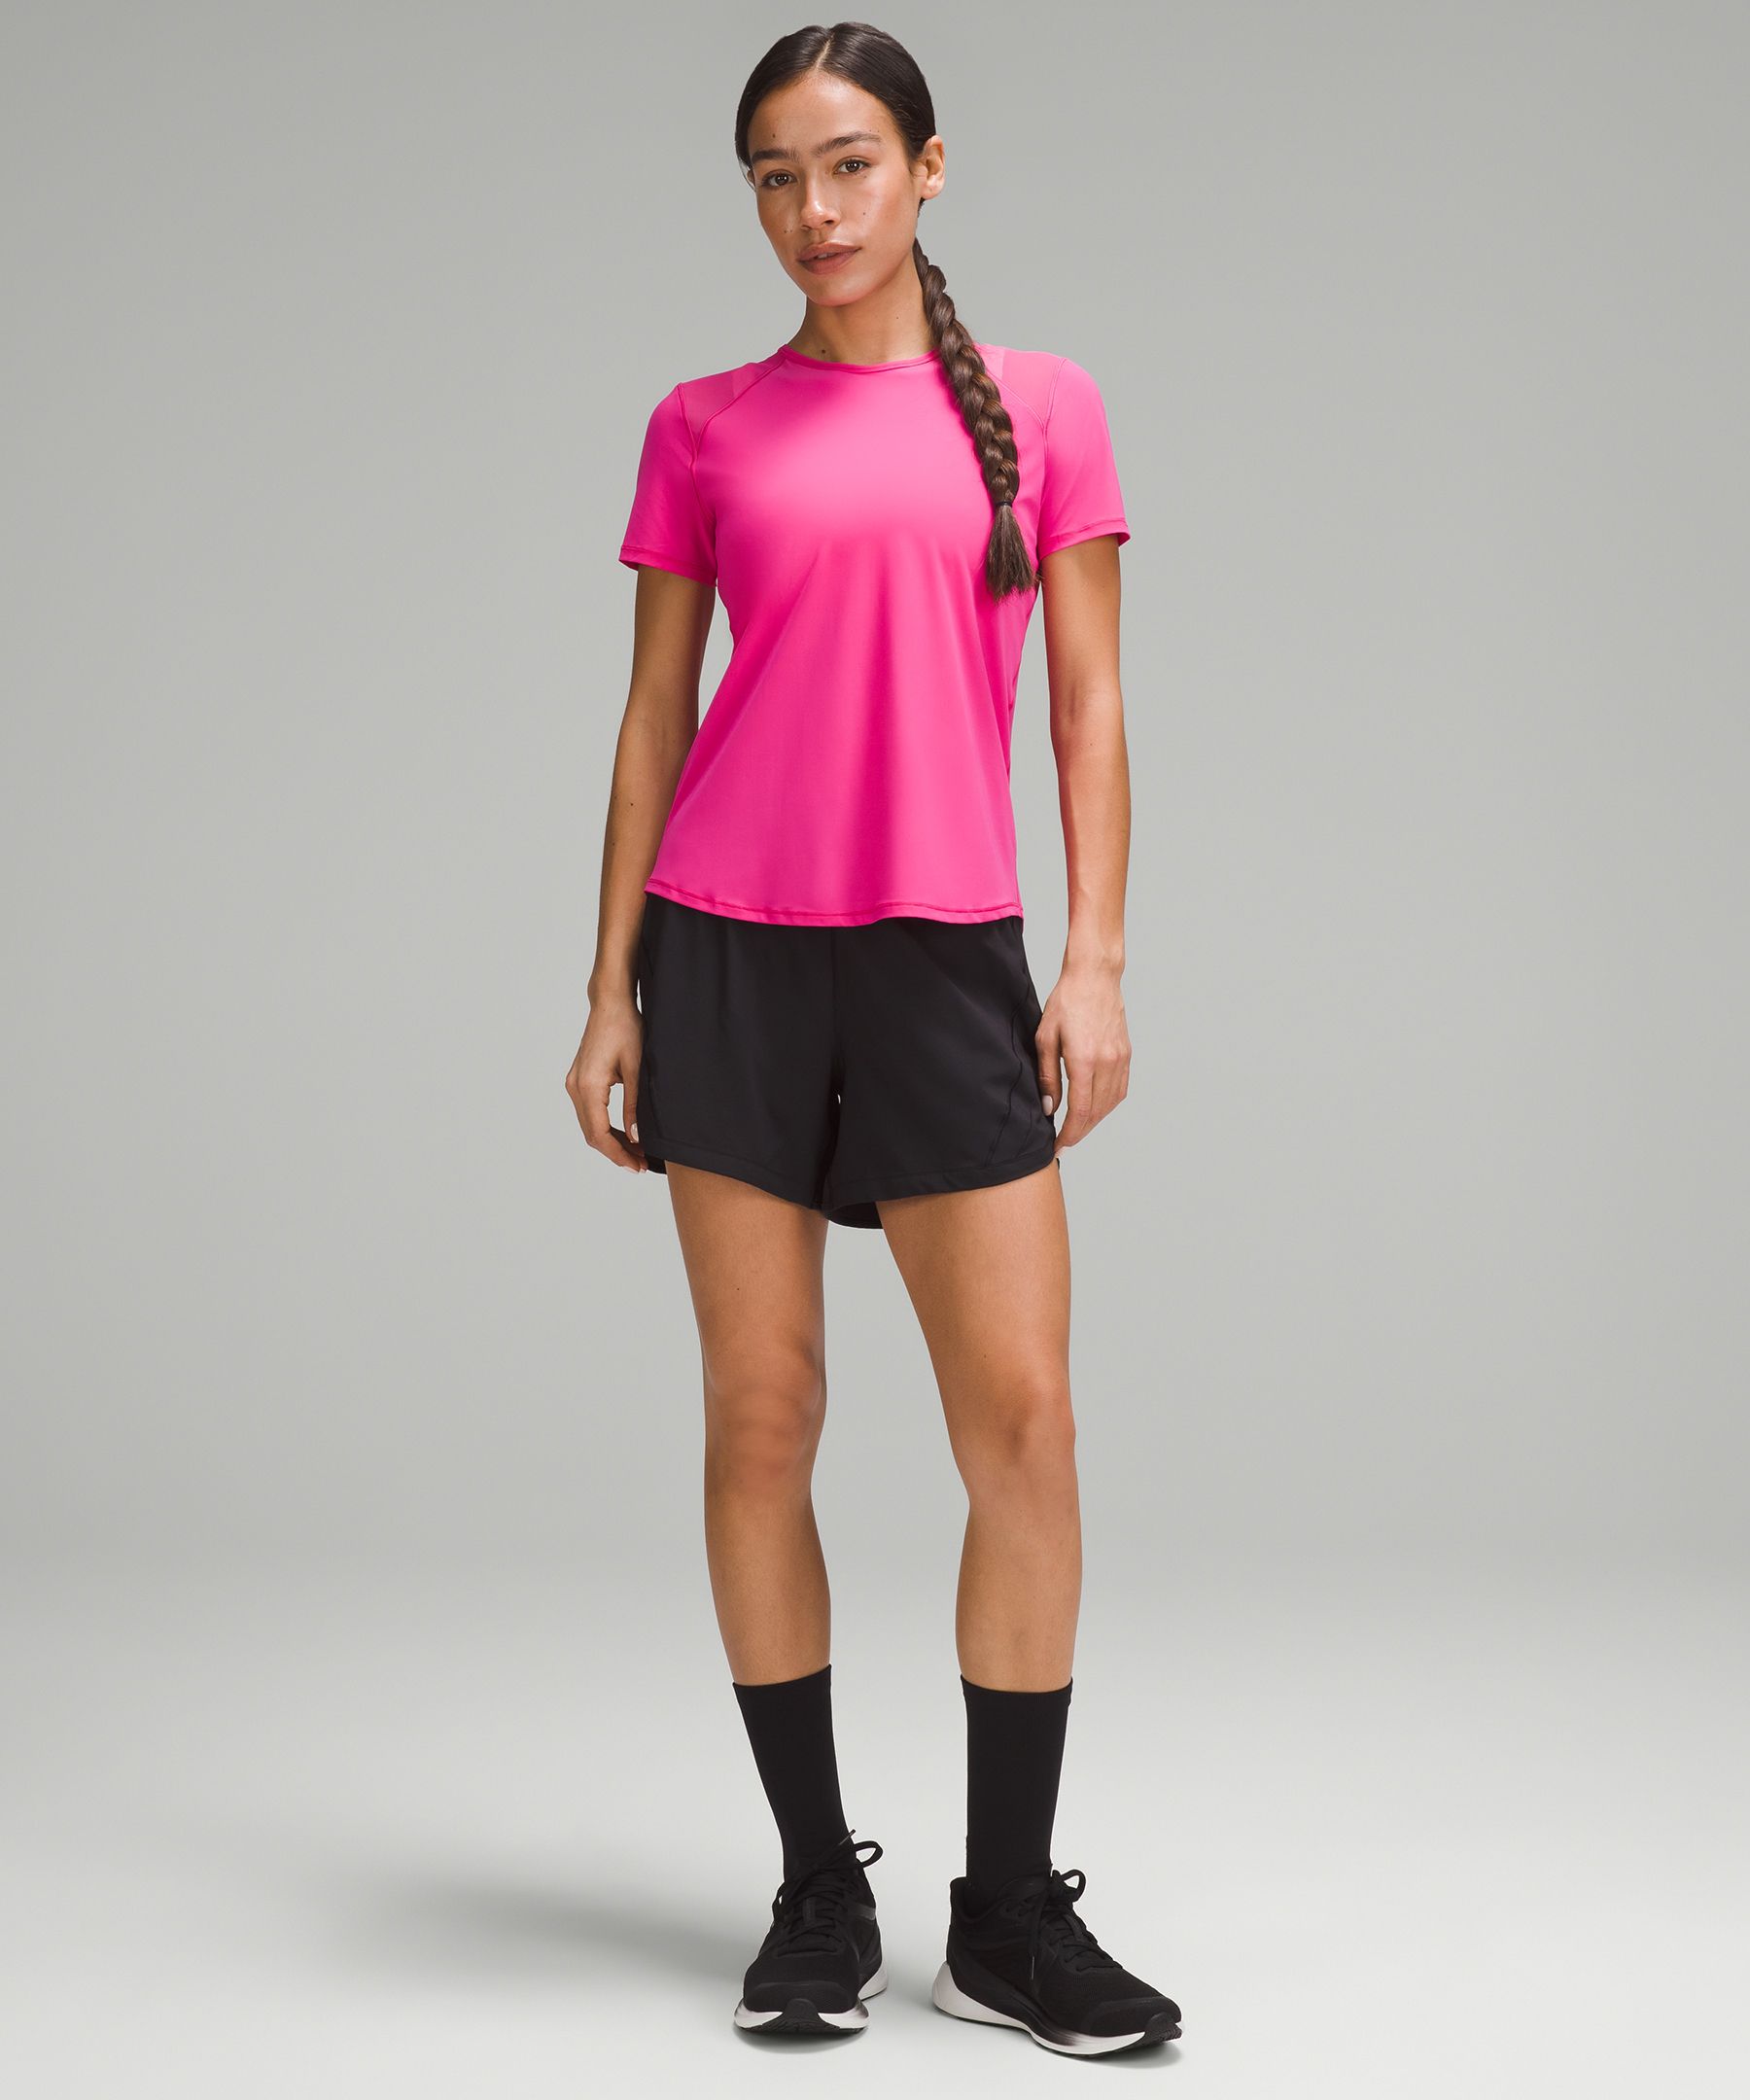 Women's Pink Short Sleeve Shirts